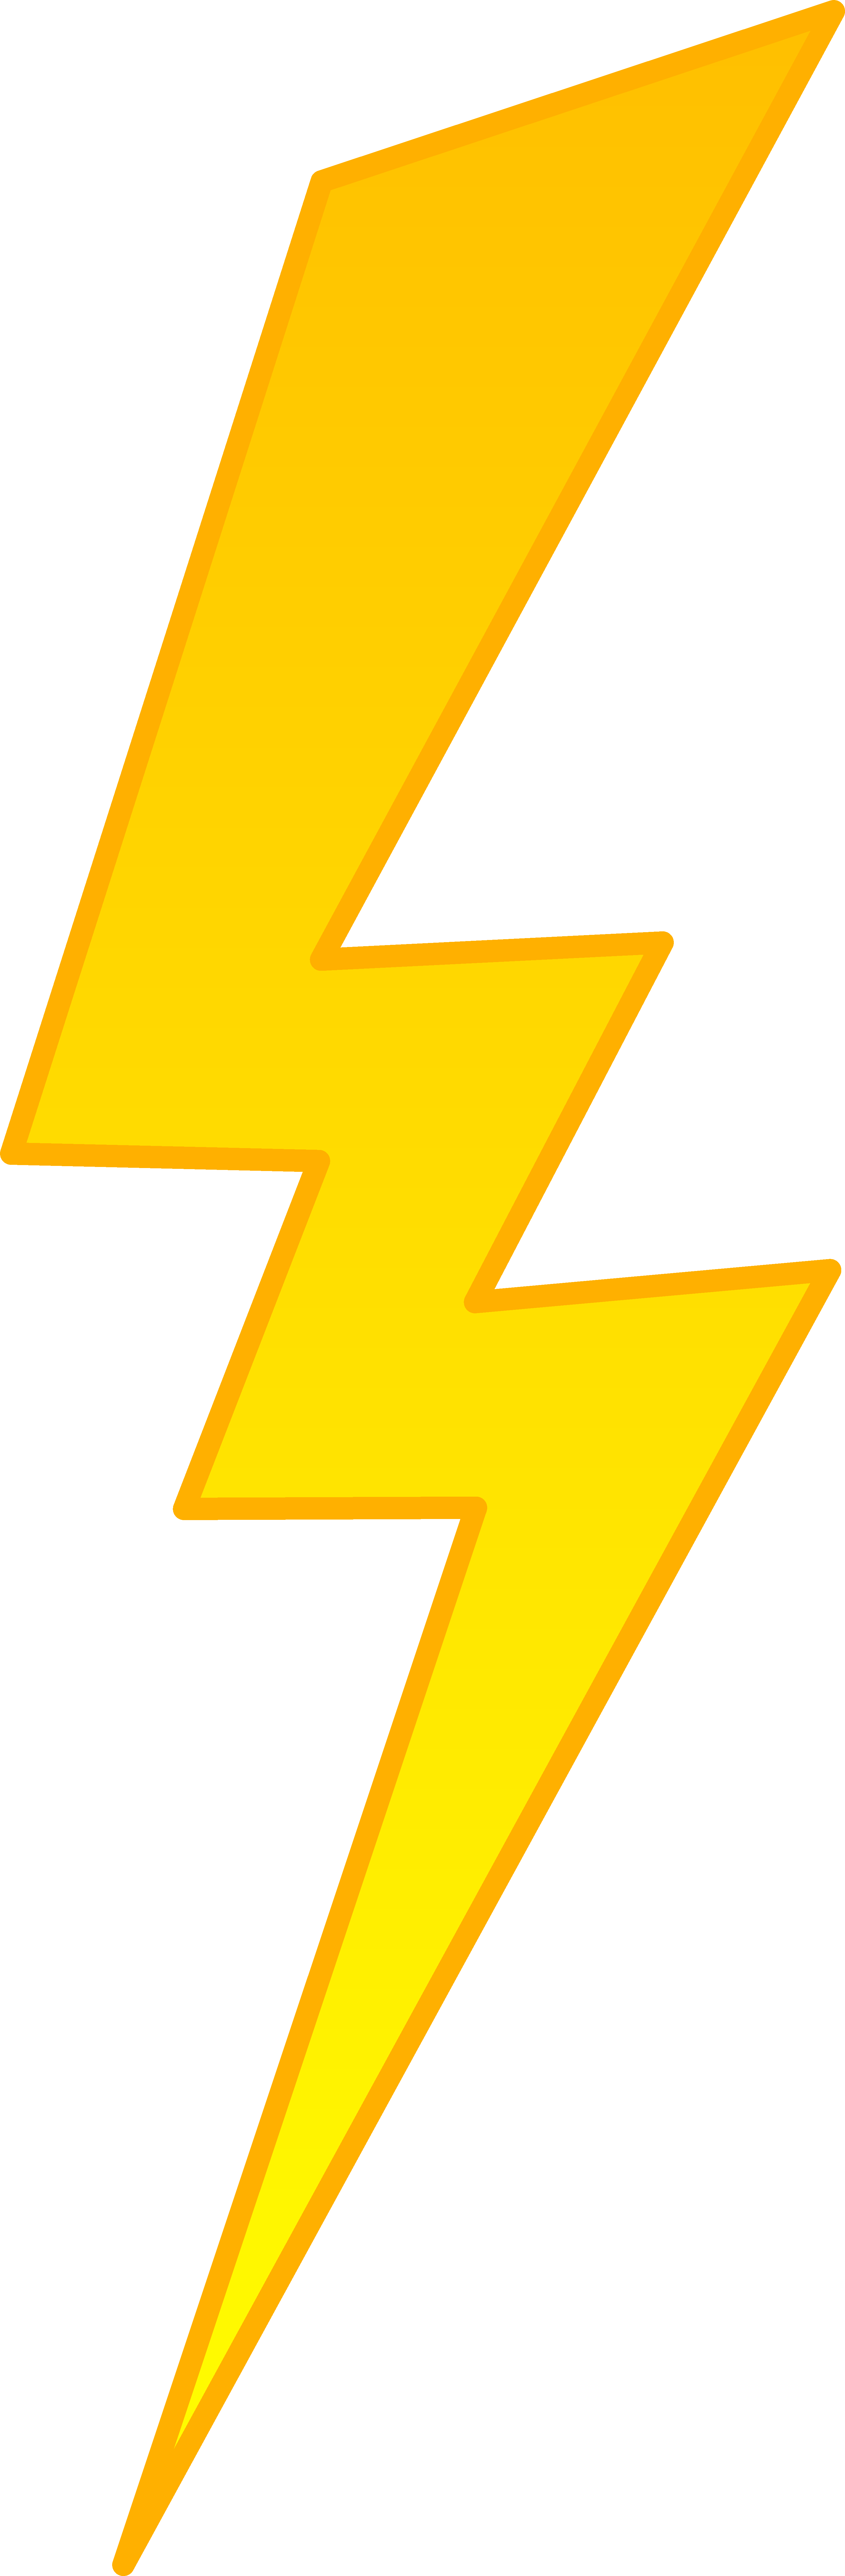 Golden Lightning Bolt Symbol Free Clip Art - Drawing (3134x9556)